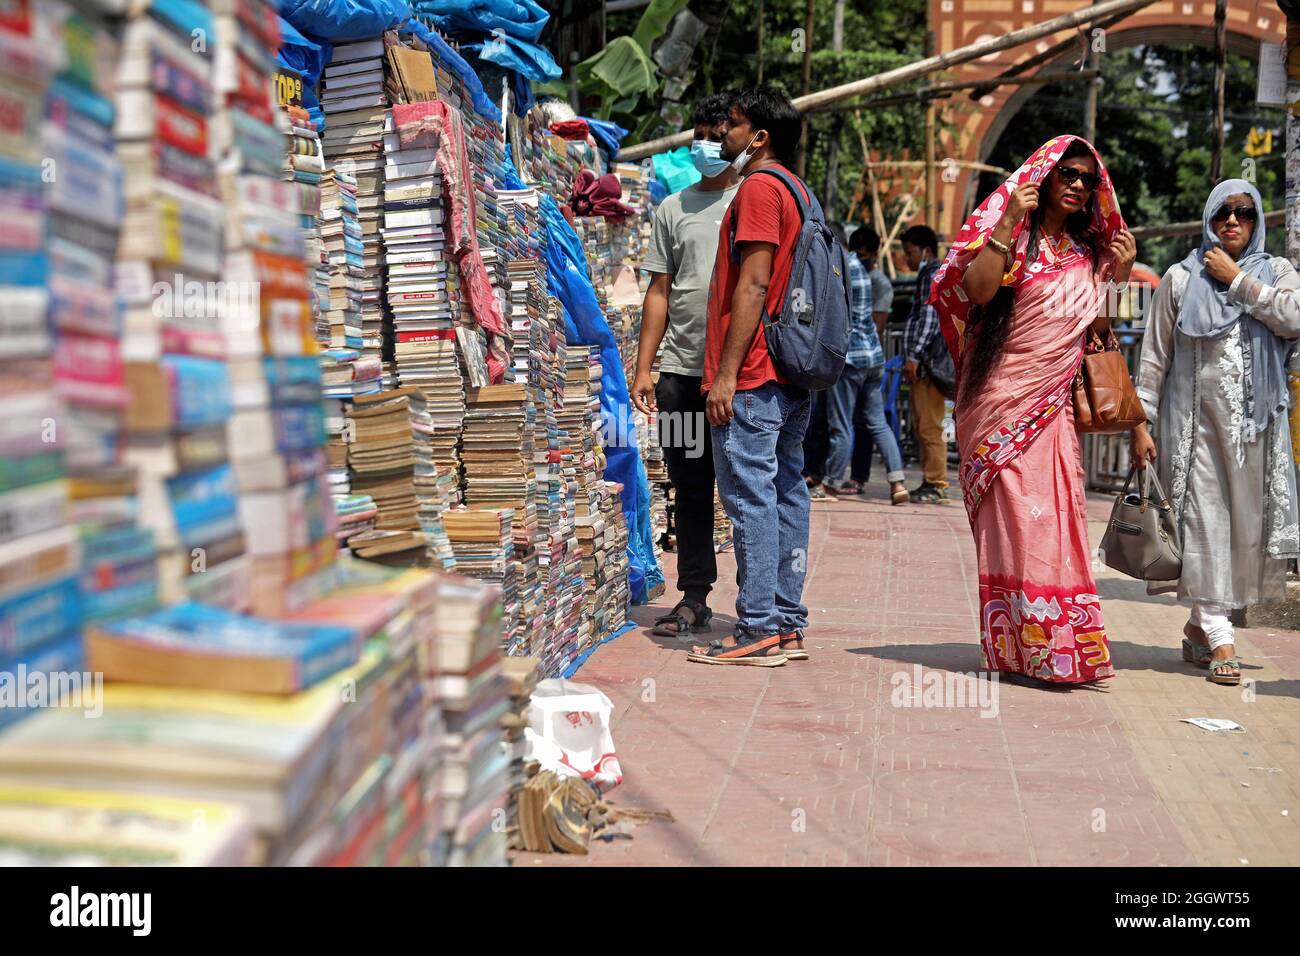 Dhaka, Bangladesch. September 2021. Ein Mann sieht aus, wie viele Bücher aufgestapelt wurden, die aufgrund der Schließung von Buchhandlungen aufgrund mangelnder Verkäufe aufgrund der Covid-19-Situation zu sehr niedrigen Preisen auf dem externen Markt versteigert wurden. Die alten Buchhandlungen in der Hauptstadt Newmarket haben aufgrund der Schließung von Bildungseinrichtungen aufgrund der Prävalenz von Covid-19 lange Zeit Verluste erlitten. Am 3. September 2021 in Dhaka, Bangladesch. Kredit: Eyepix Gruppe/Alamy Live Nachrichten Gutschrift: Eyepix Gruppe/Alamy Live Nachrichten Stockfoto